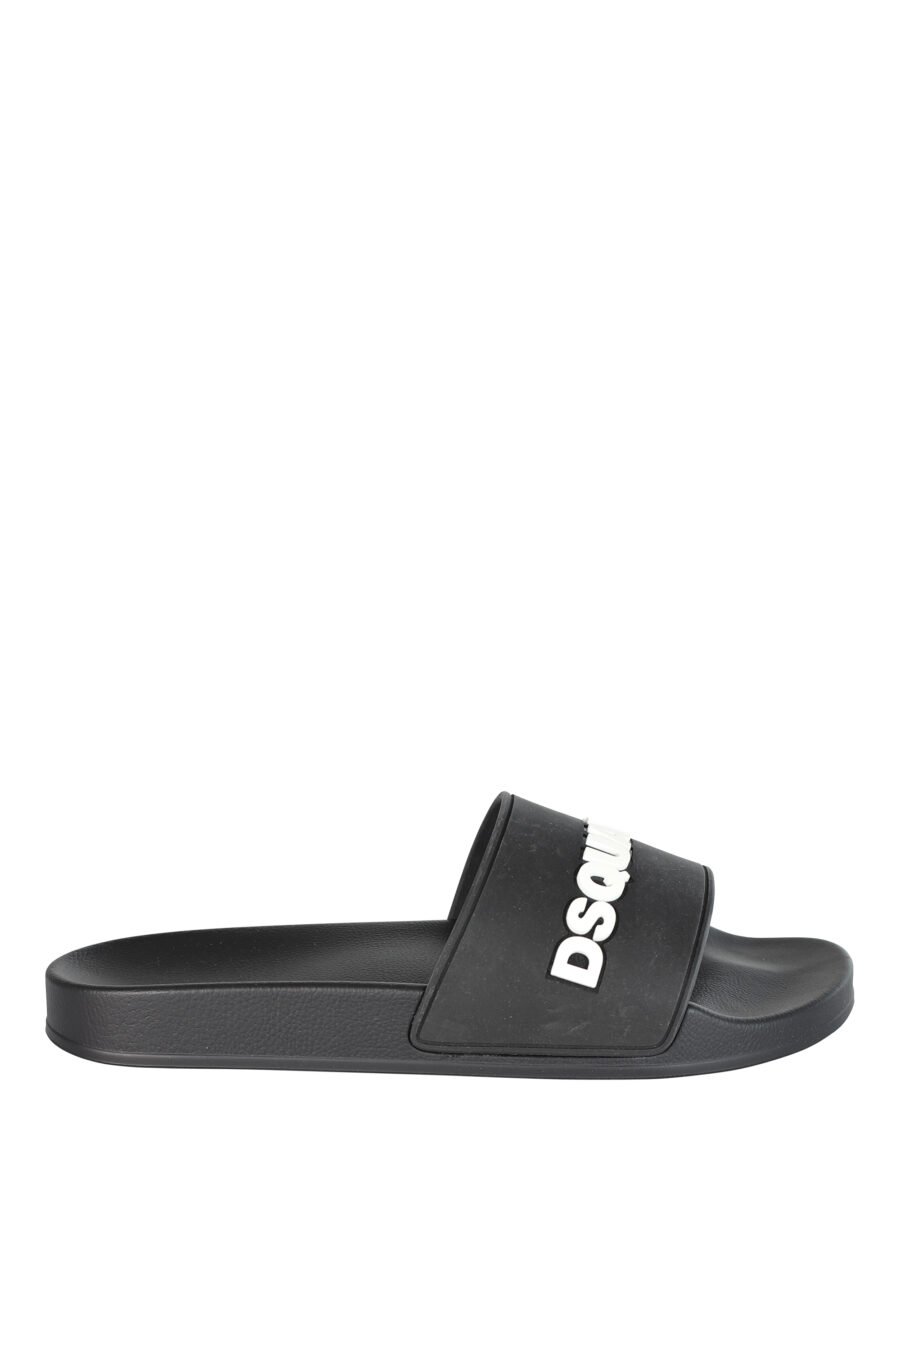 Black flip flops with white rubber maxilogo - 8055777073773